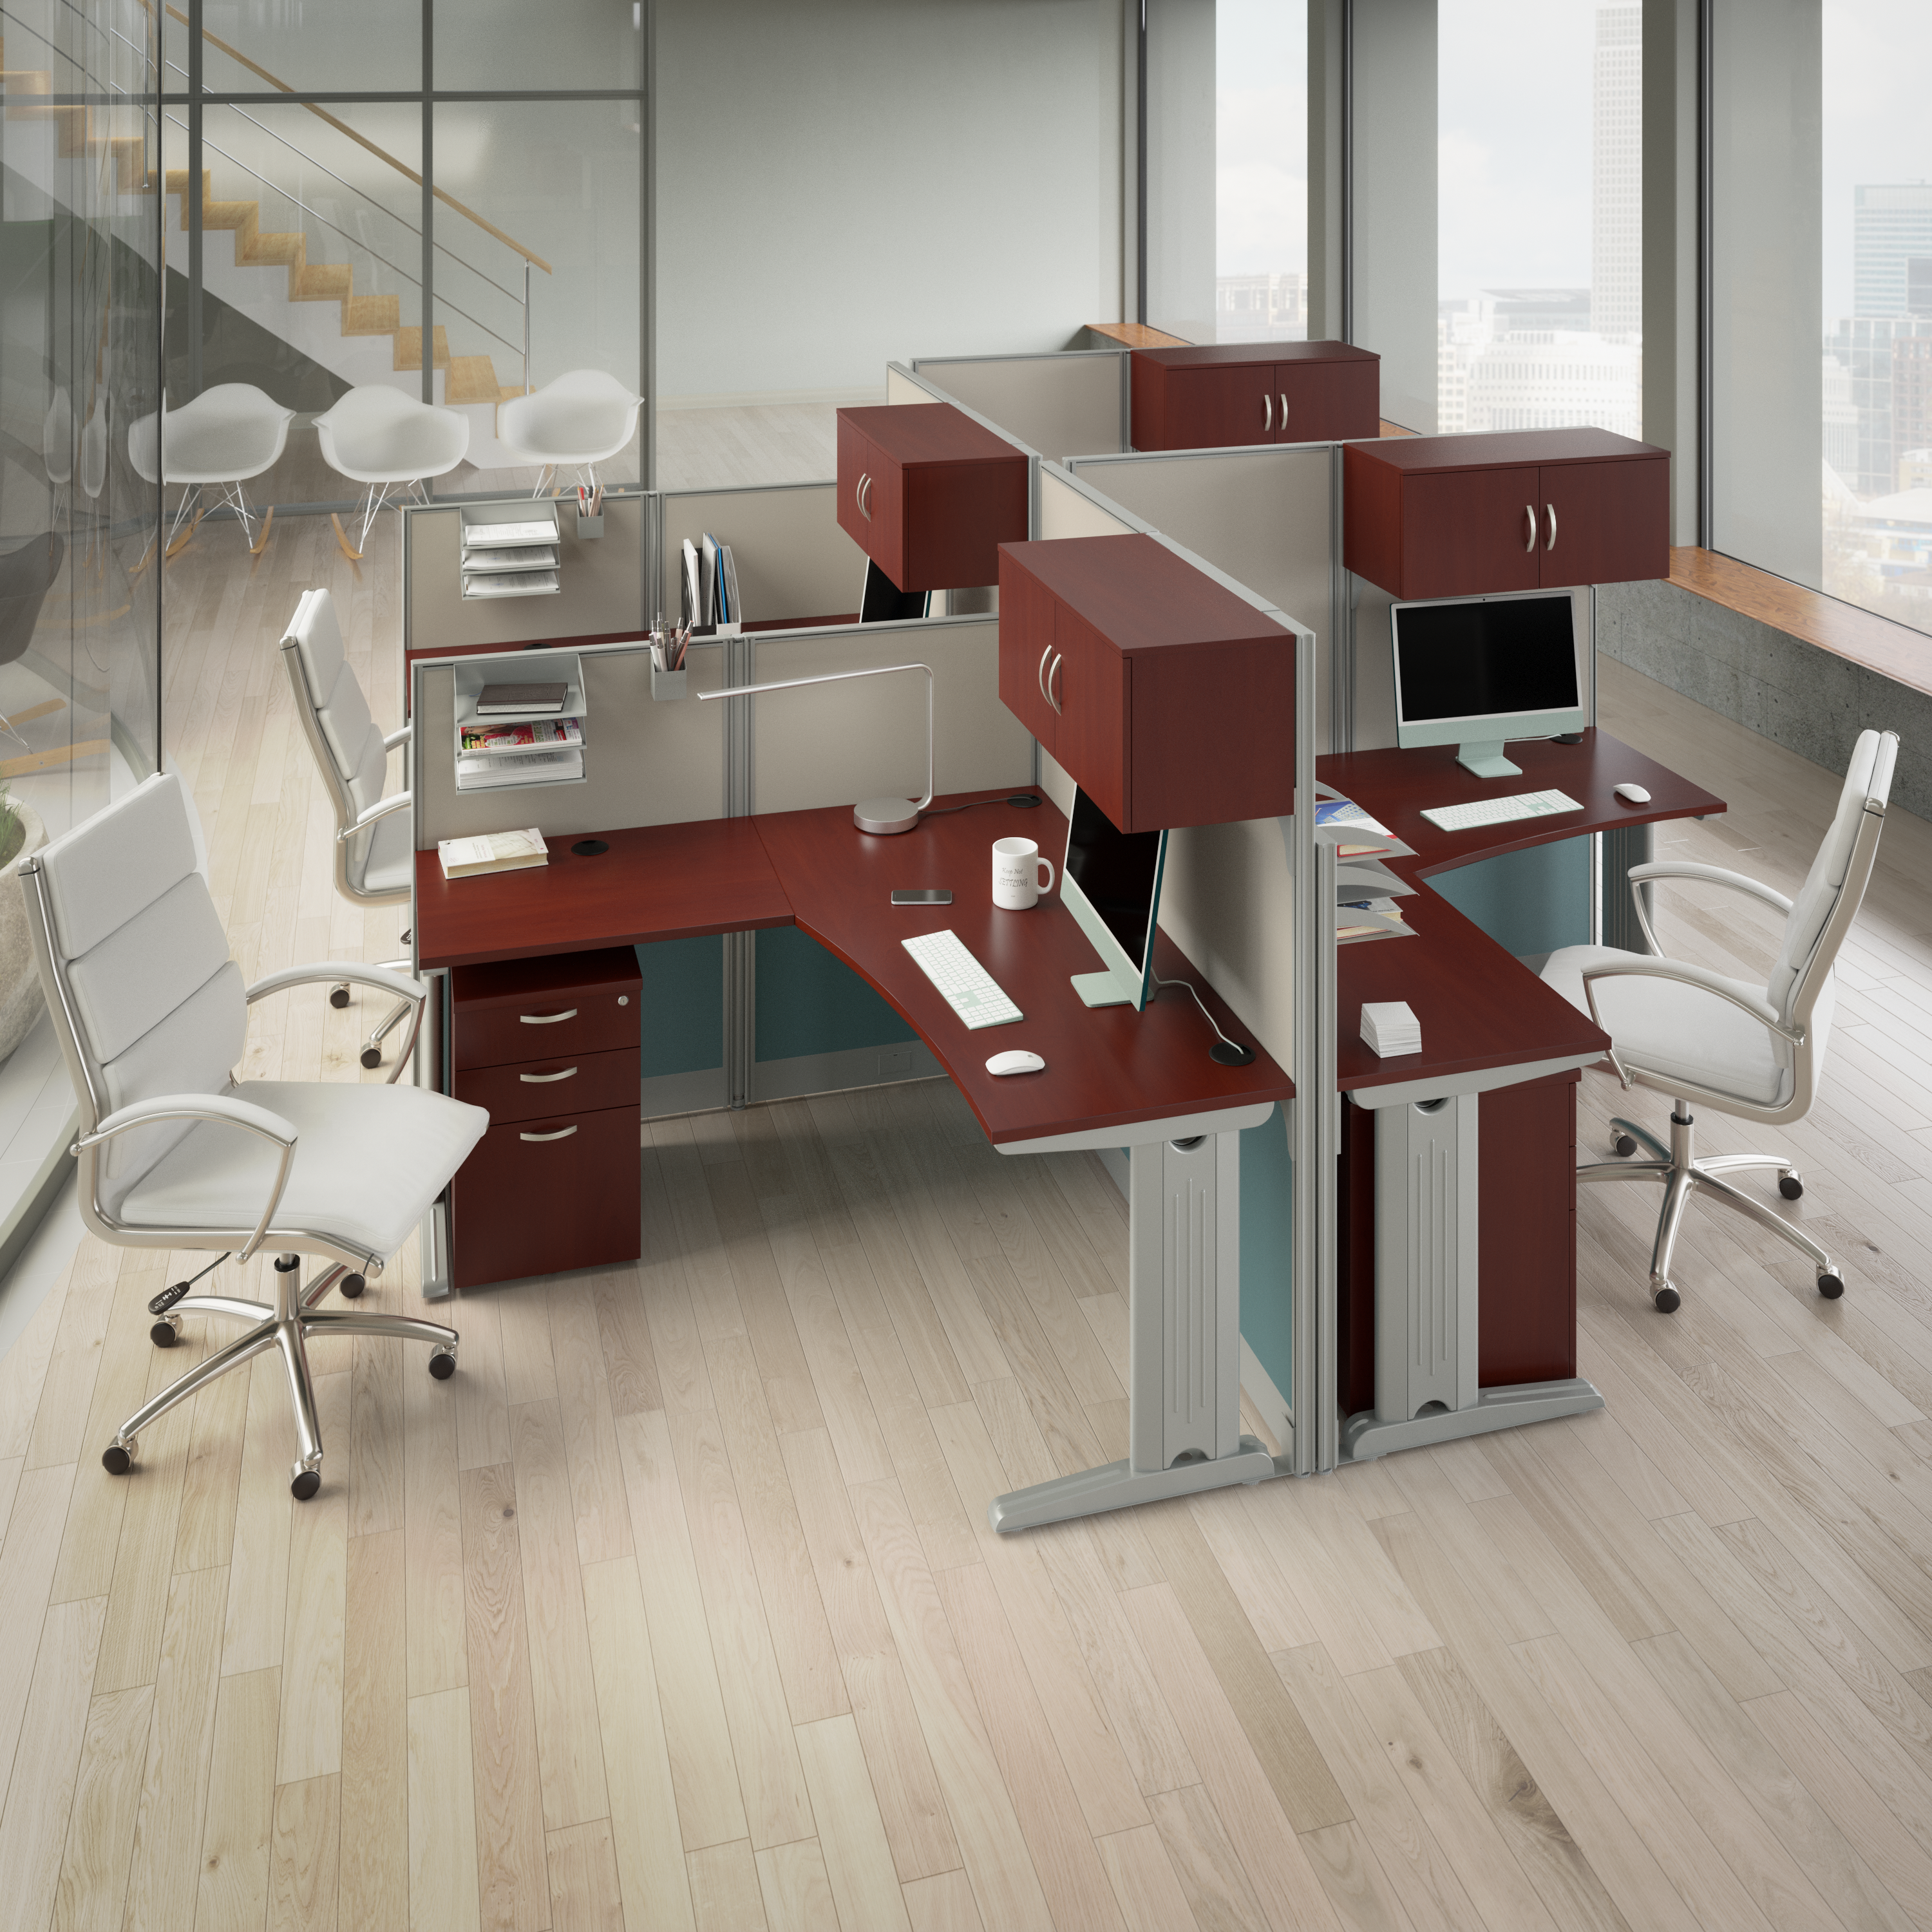 Shop Bush Business Furniture Office in an Hour 65W x 65D L Shaped Cubicle Desk 08 WC36494-03K #color_hansen cherry